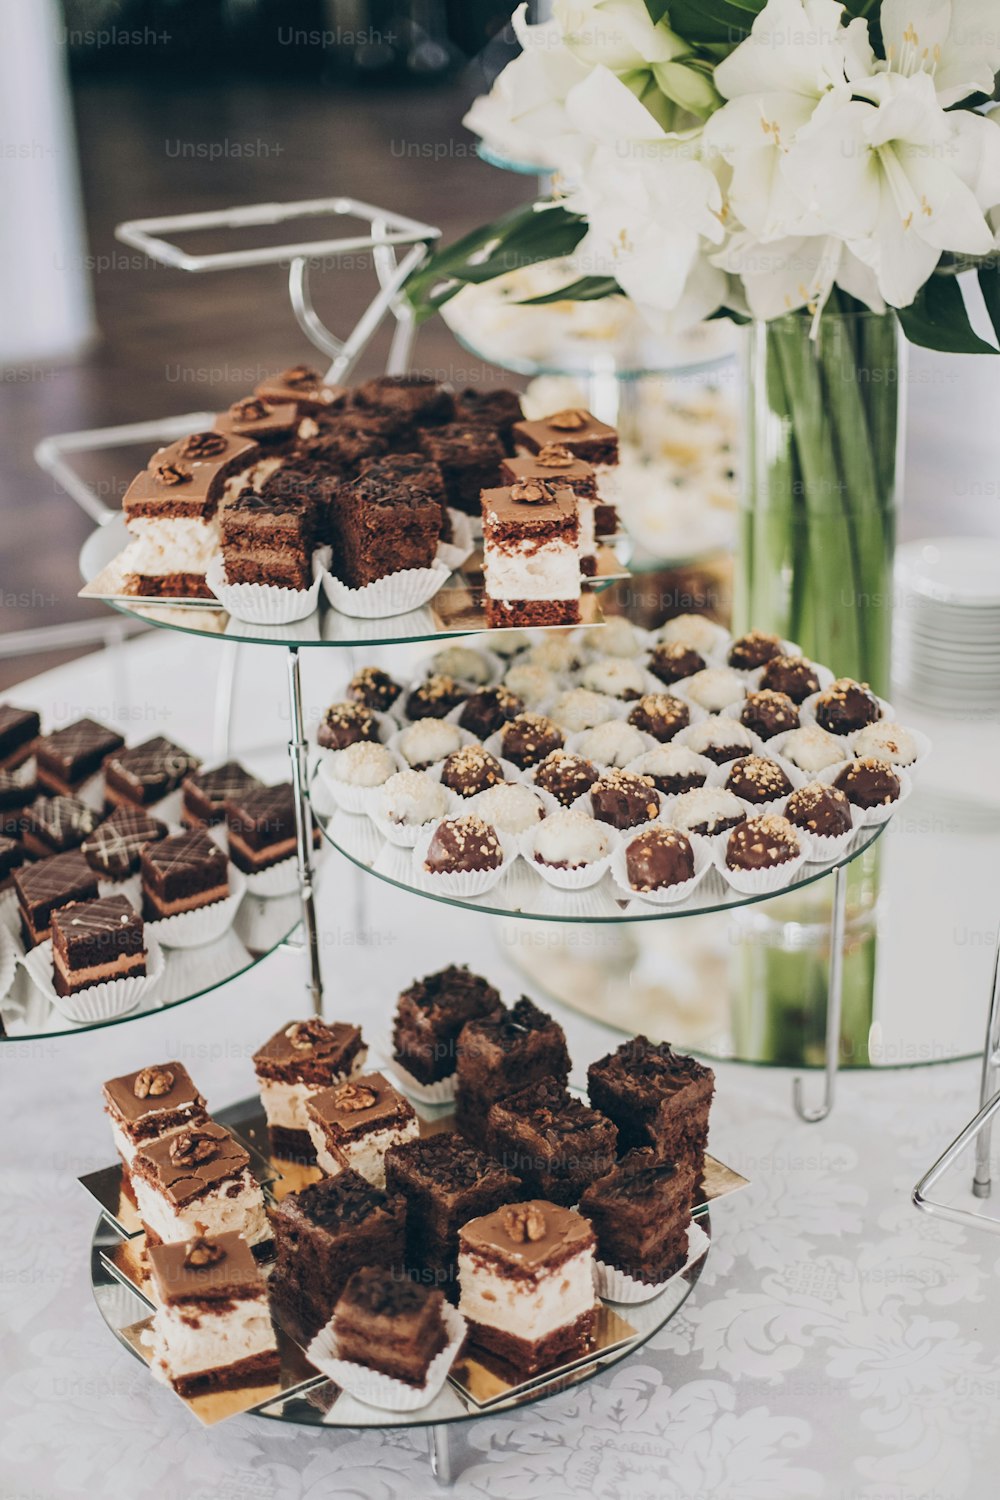 Hochzeit Schokoriegel. Köstliche Schokoladendesserts, Kuchen und Kekse am Stand bei der Hochzeitsfeier im Restaurant. Luxus-Catering-Service